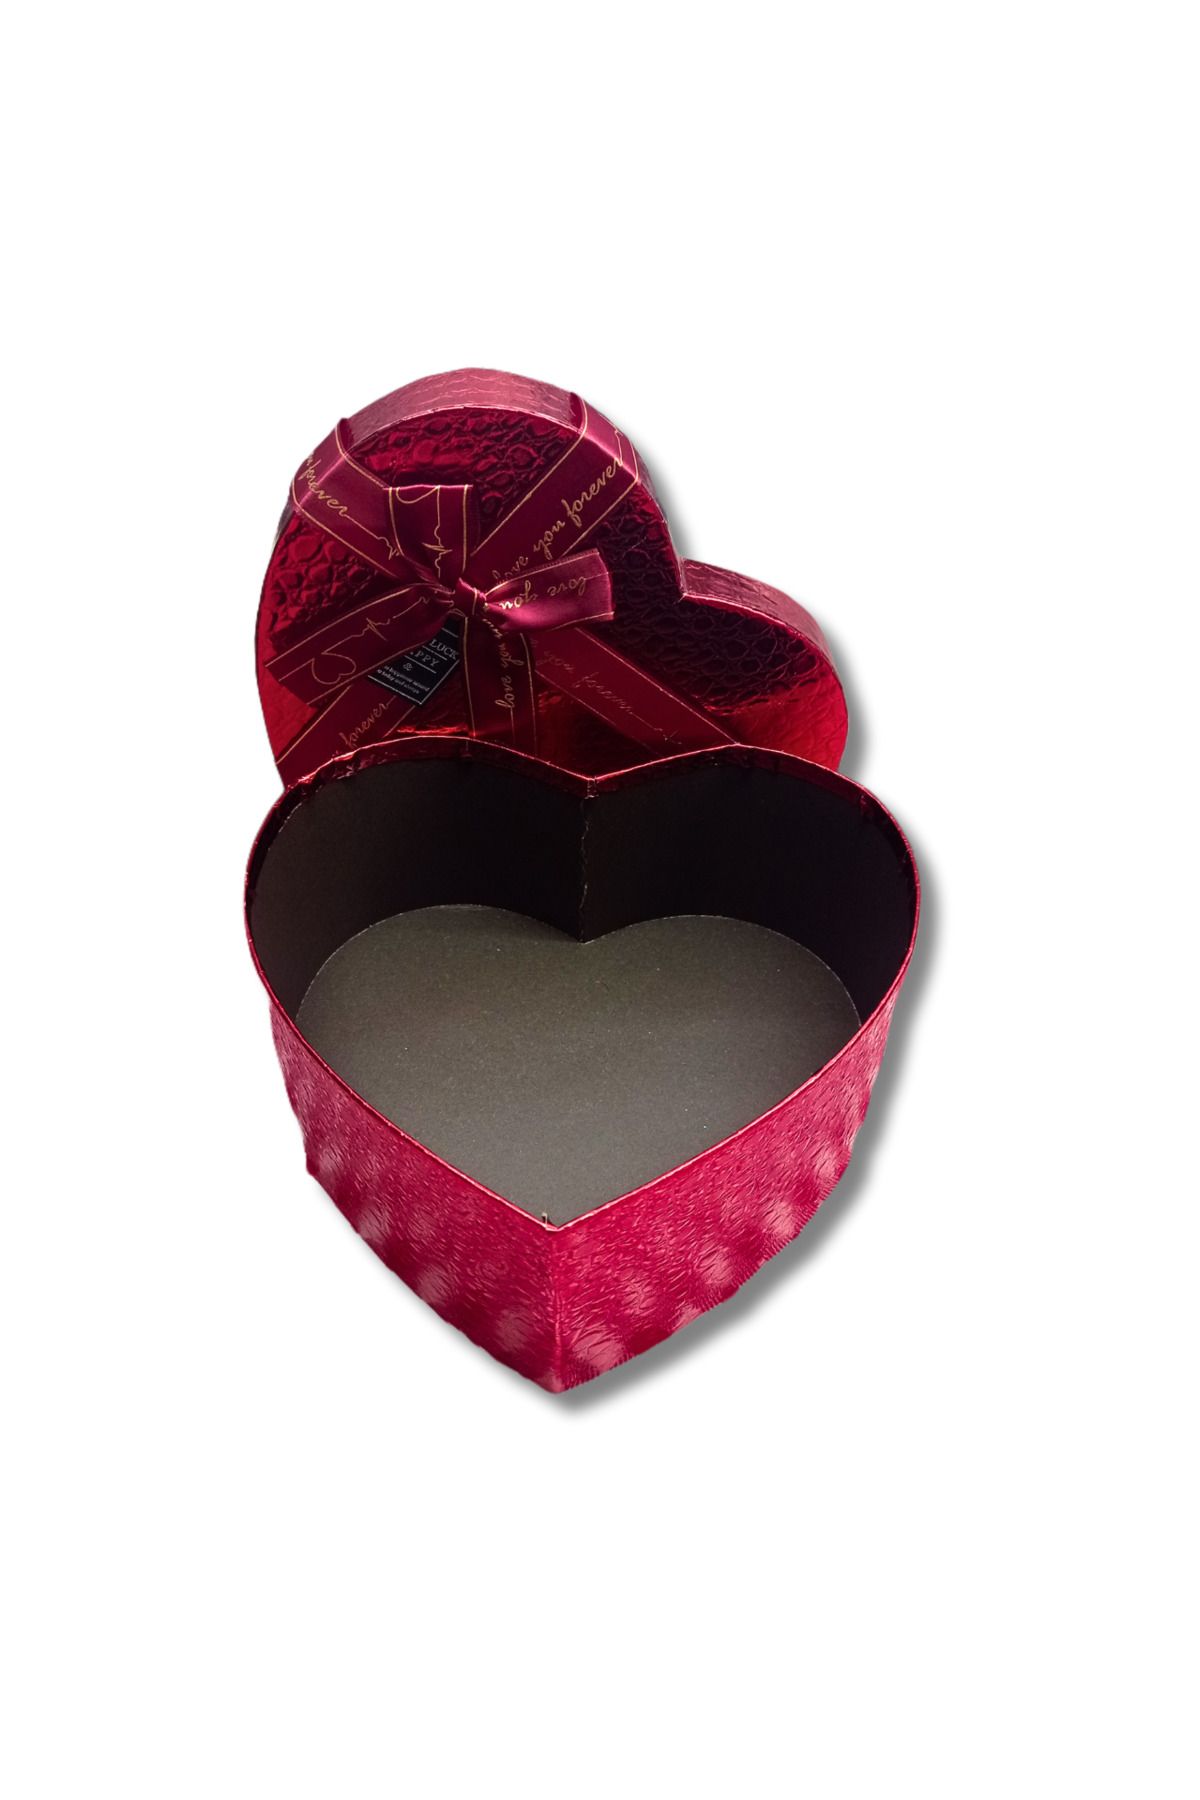 Duman Oyuncak Kırmızı Kalpli Boş Hediye Kutusu 18 × 8 Cm Orta Boy